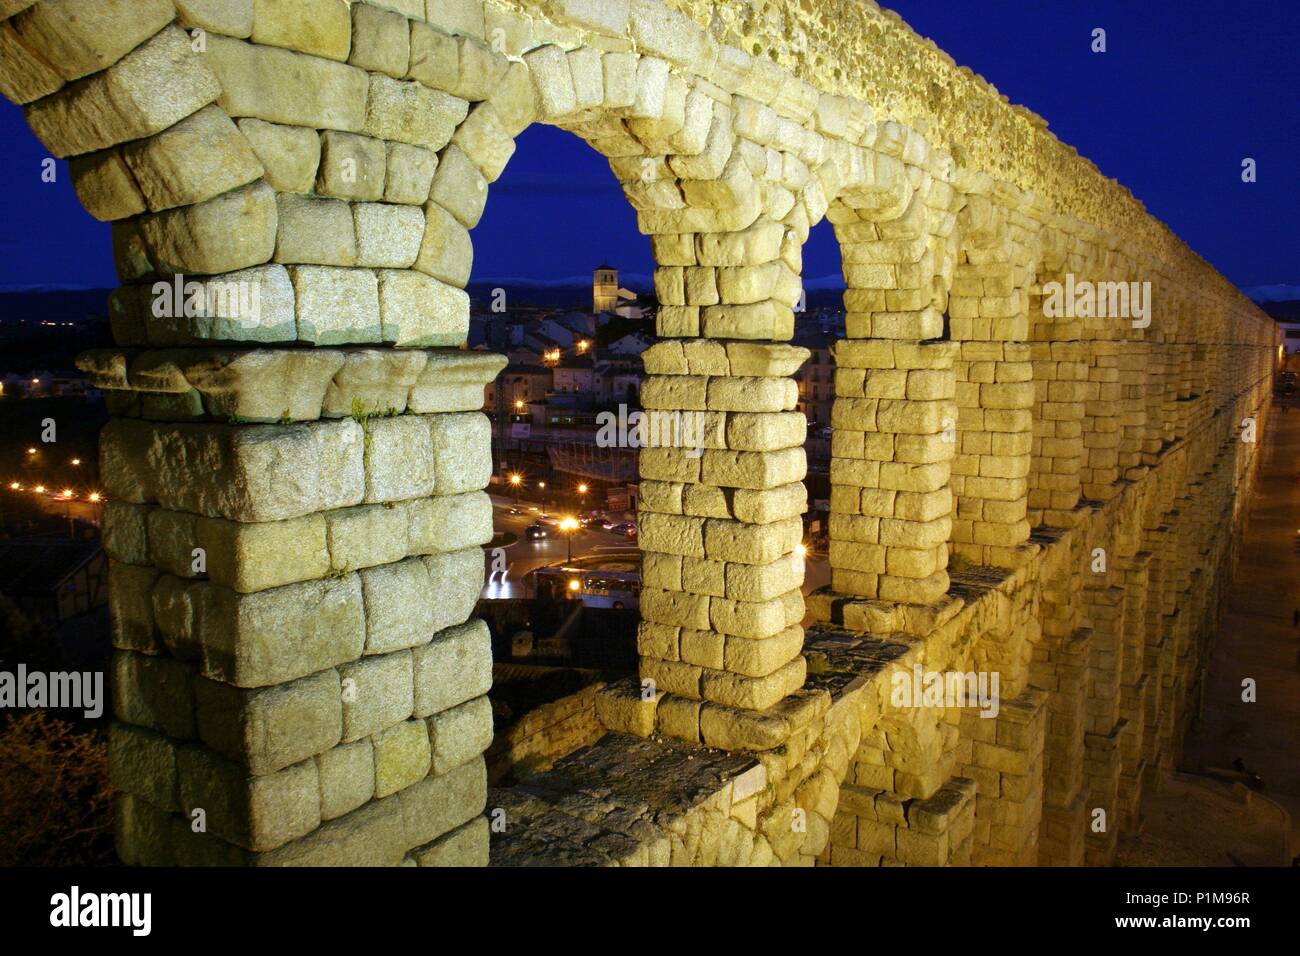 Segovia; acueducto romano iluminado y ciudad. Stock Photo